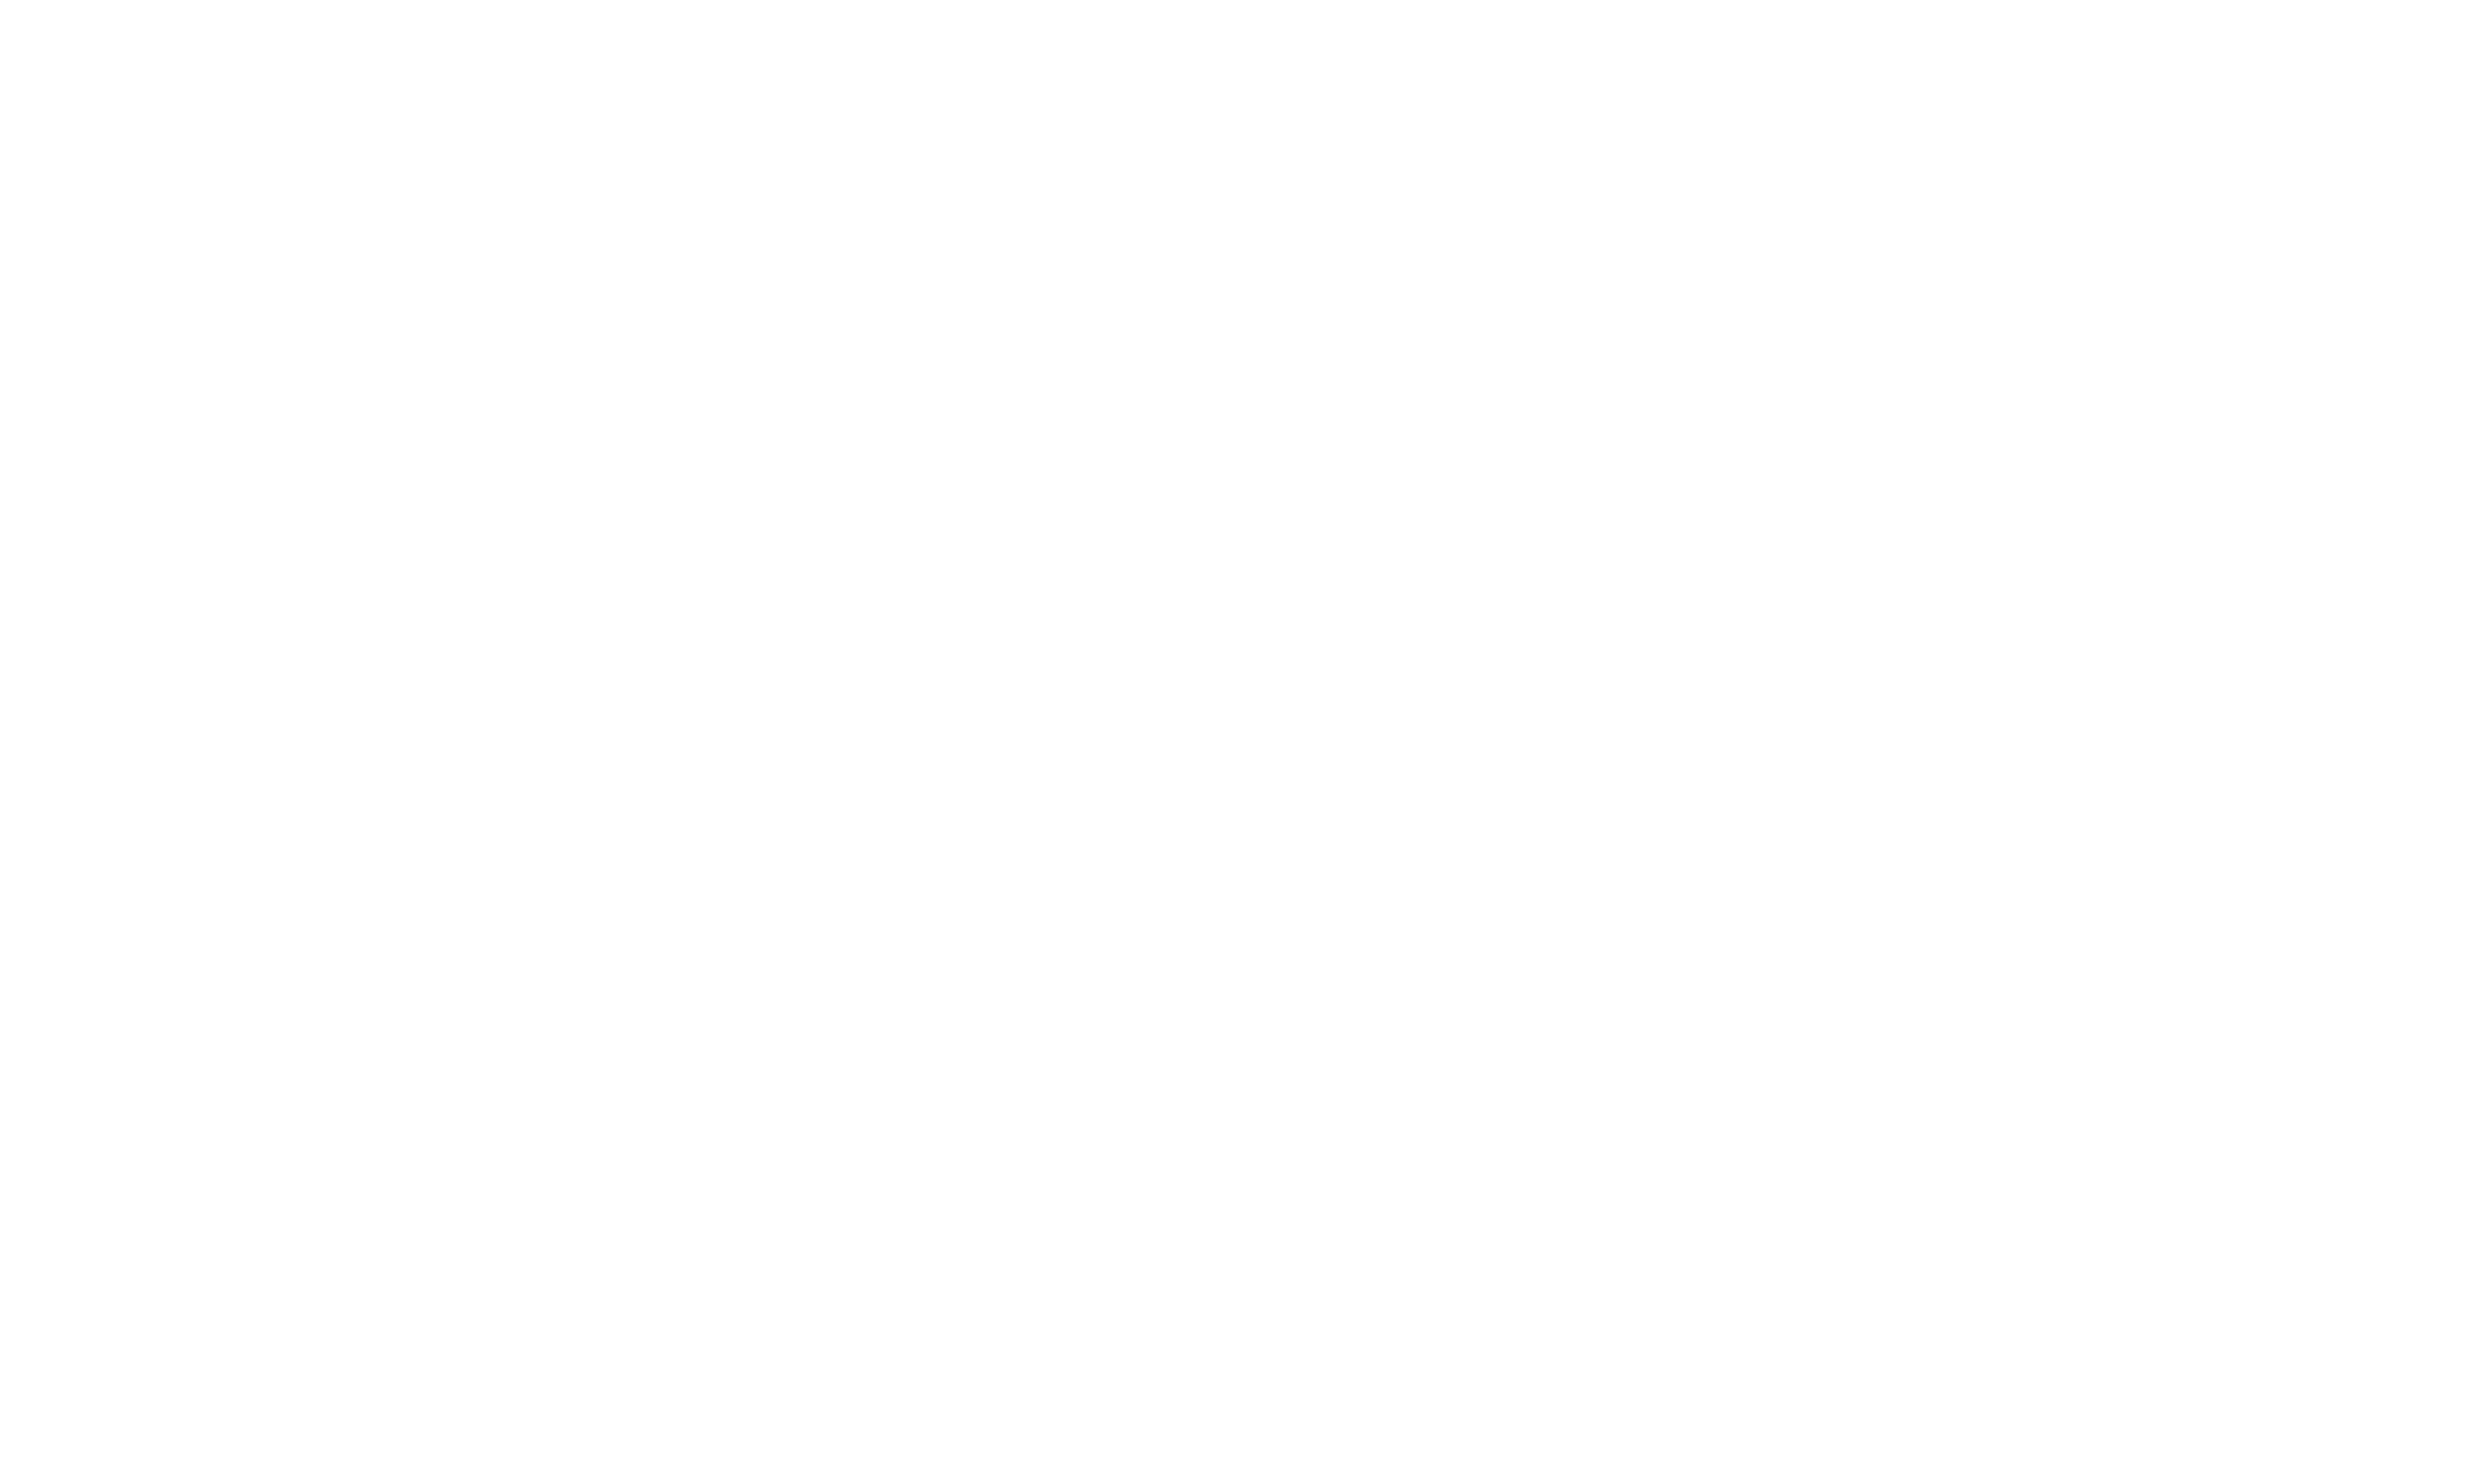 South Savour